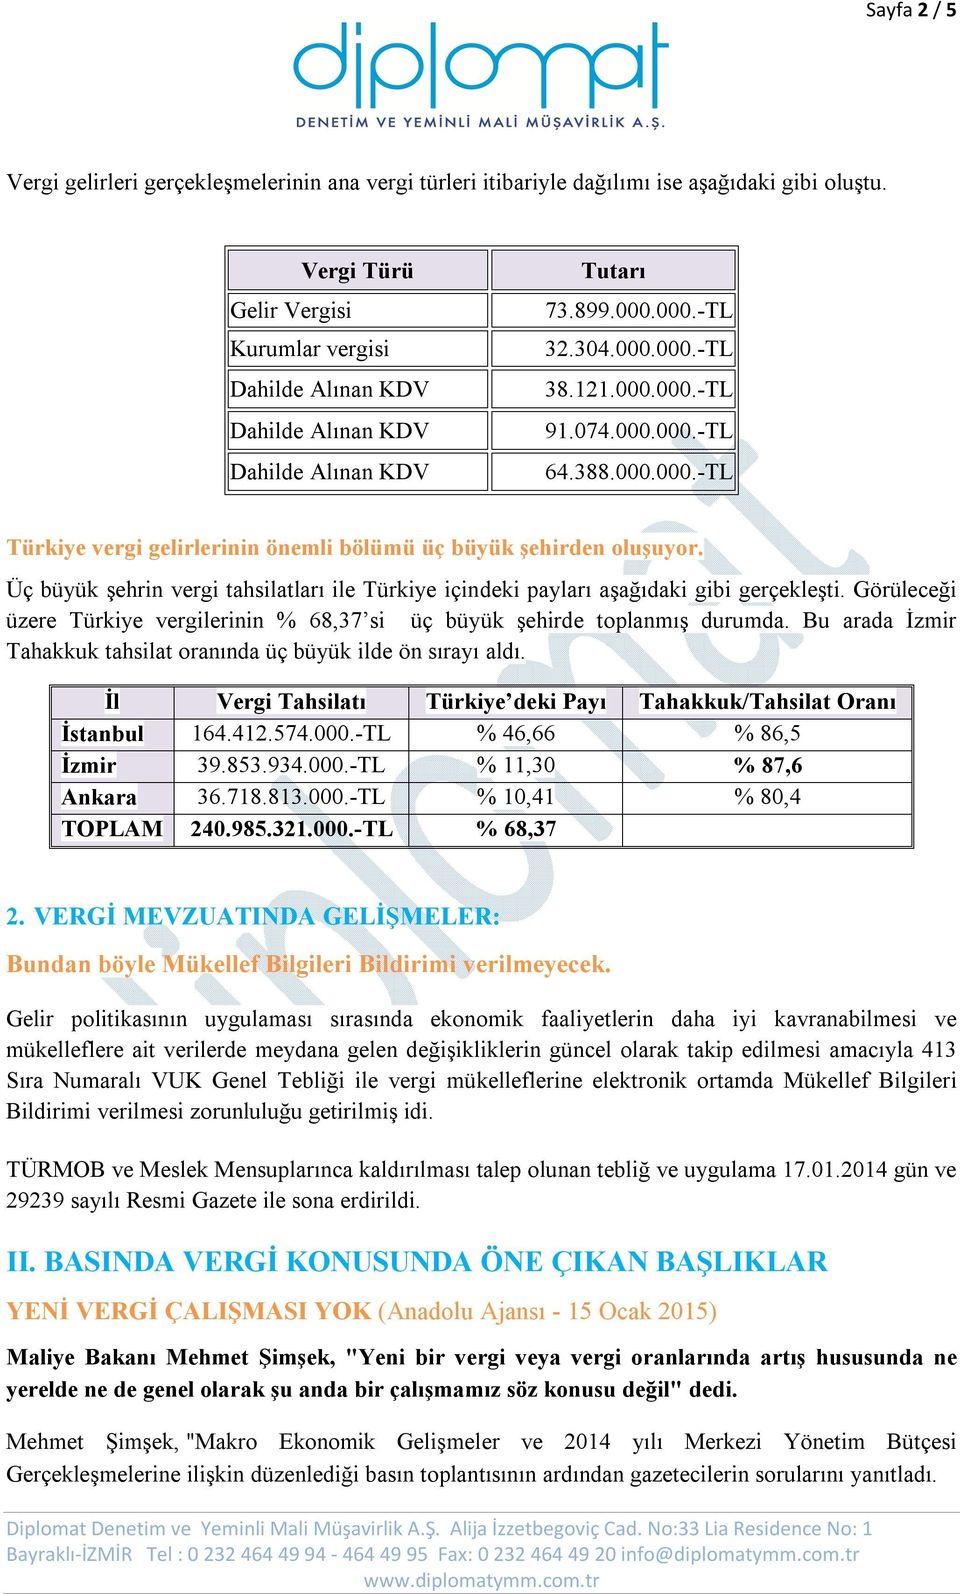 Üç büyük şehrin vergi tahsilatları ile Türkiye içindeki payları aşağıdaki gibi gerçekleşti. Görüleceği üzere Türkiye vergilerinin % 68,37 si üç büyük şehirde toplanmış durumda.